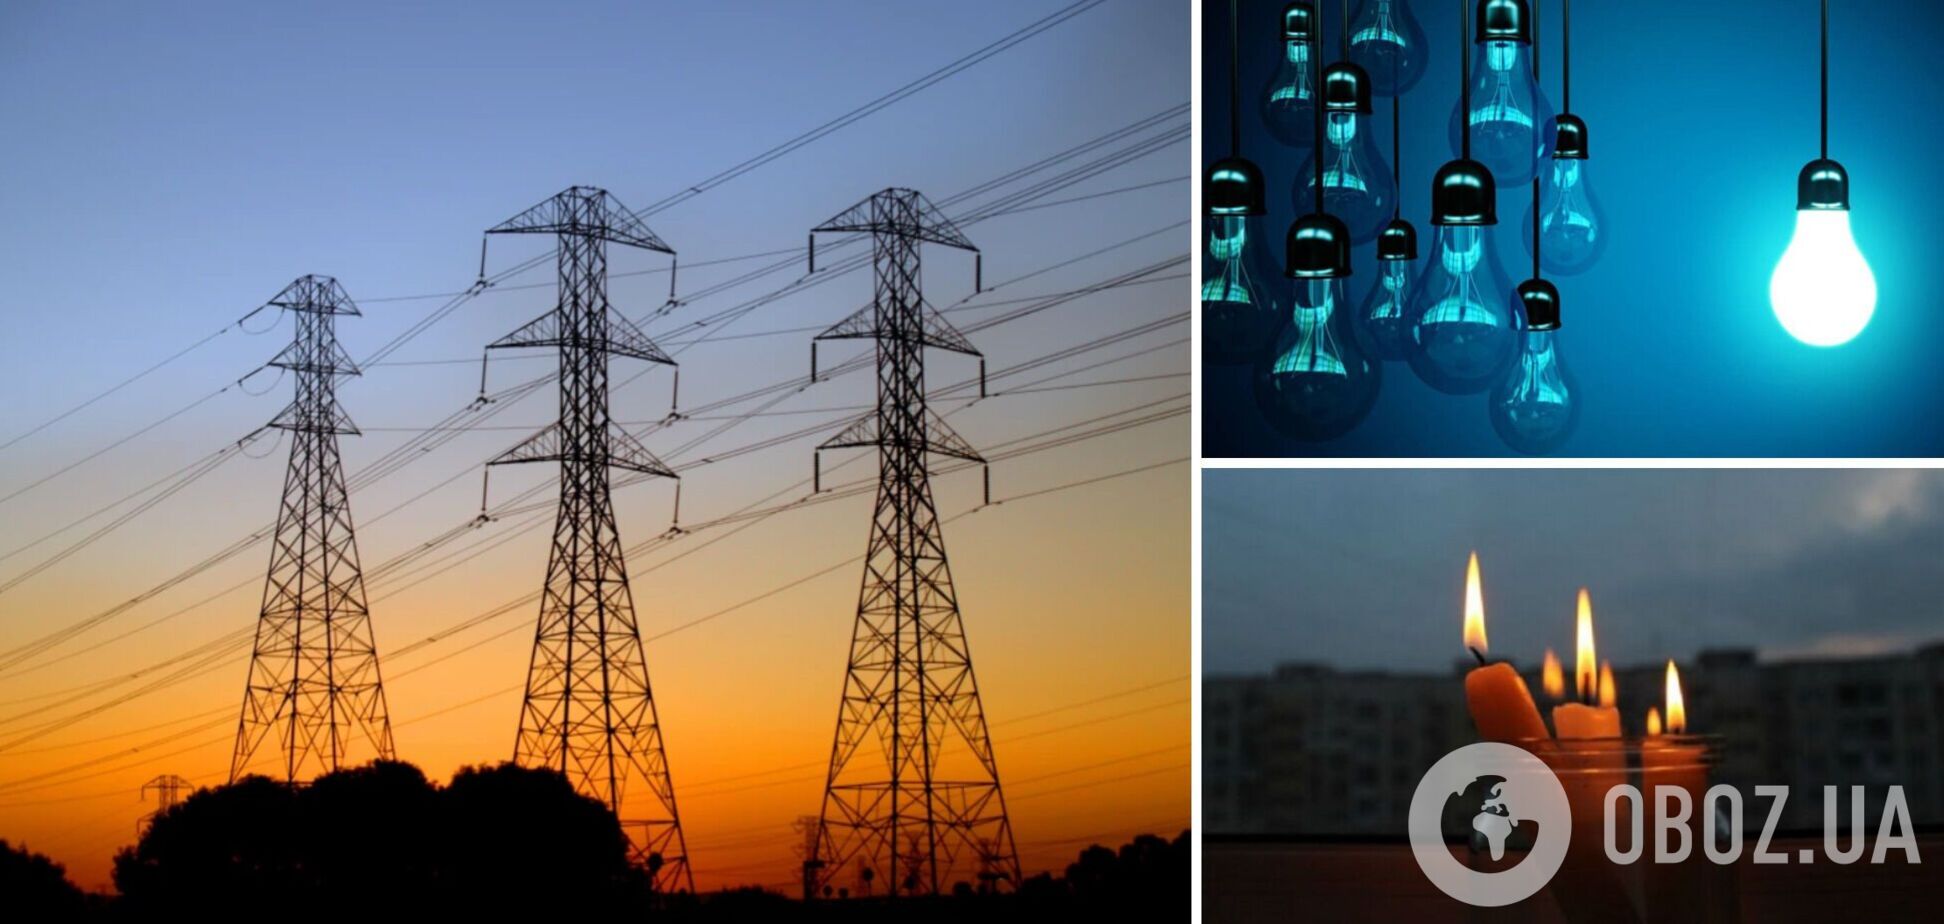 'Рівнеобленерго' повідомили про аварійні відключення електроенергії у Рівному